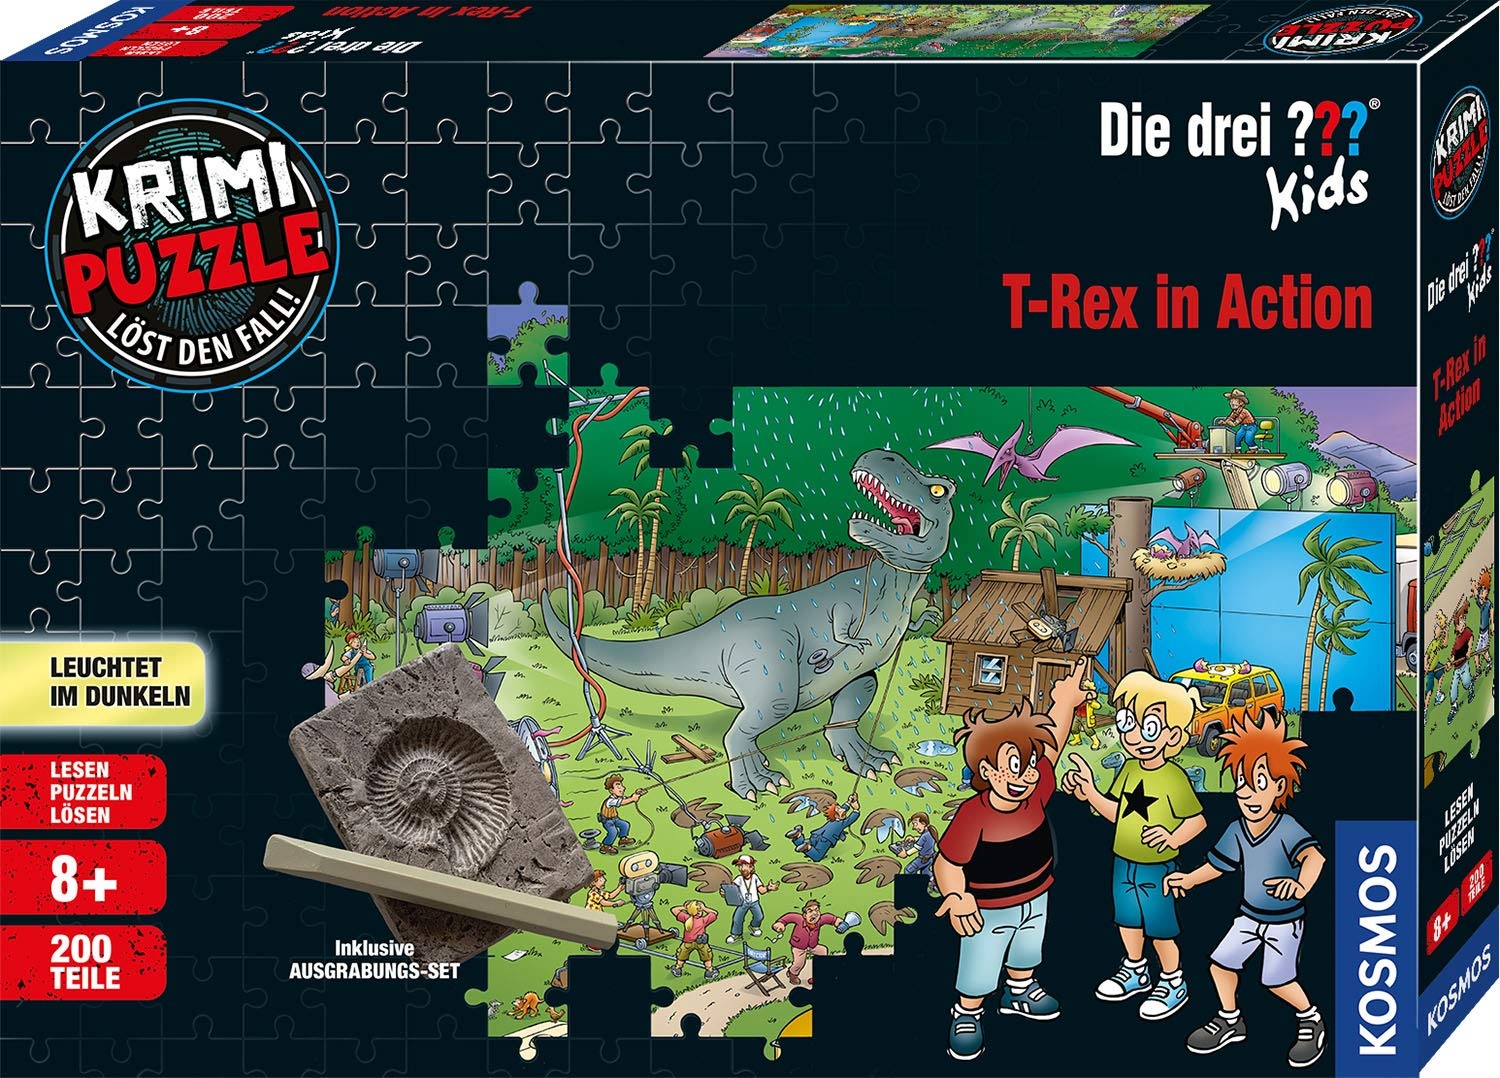 Bild Krimi Puzzle: Die drei ??? Kids - T-rex in Action (68065)